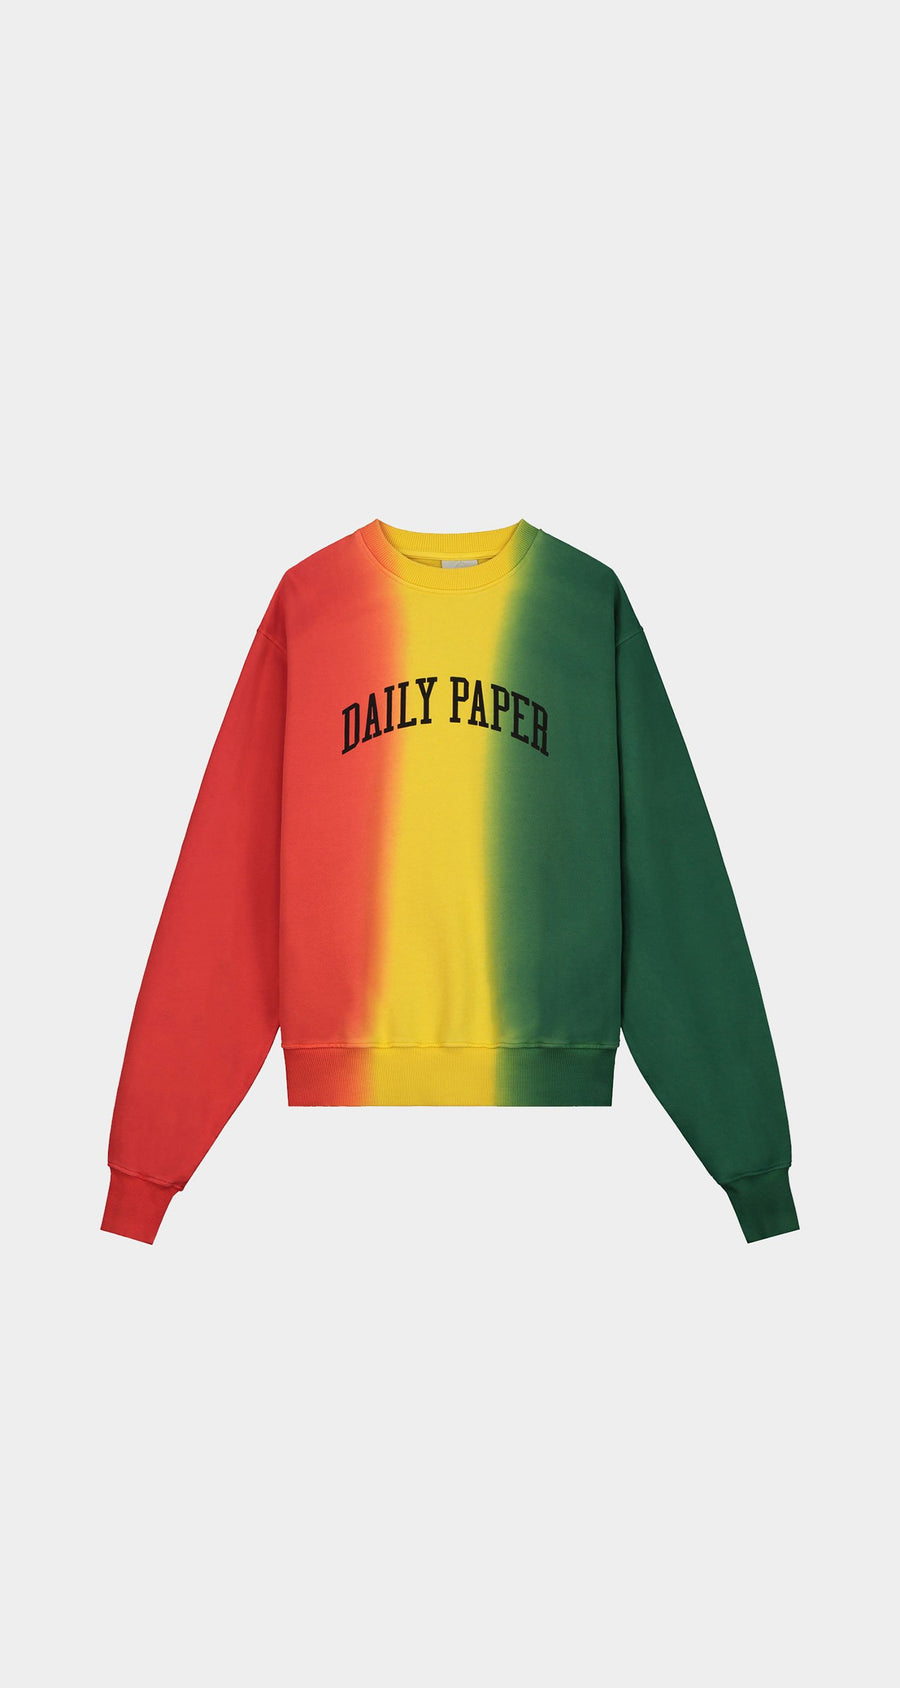 Daily Paper Sweatshirt Online, - raptorunderlayment.com